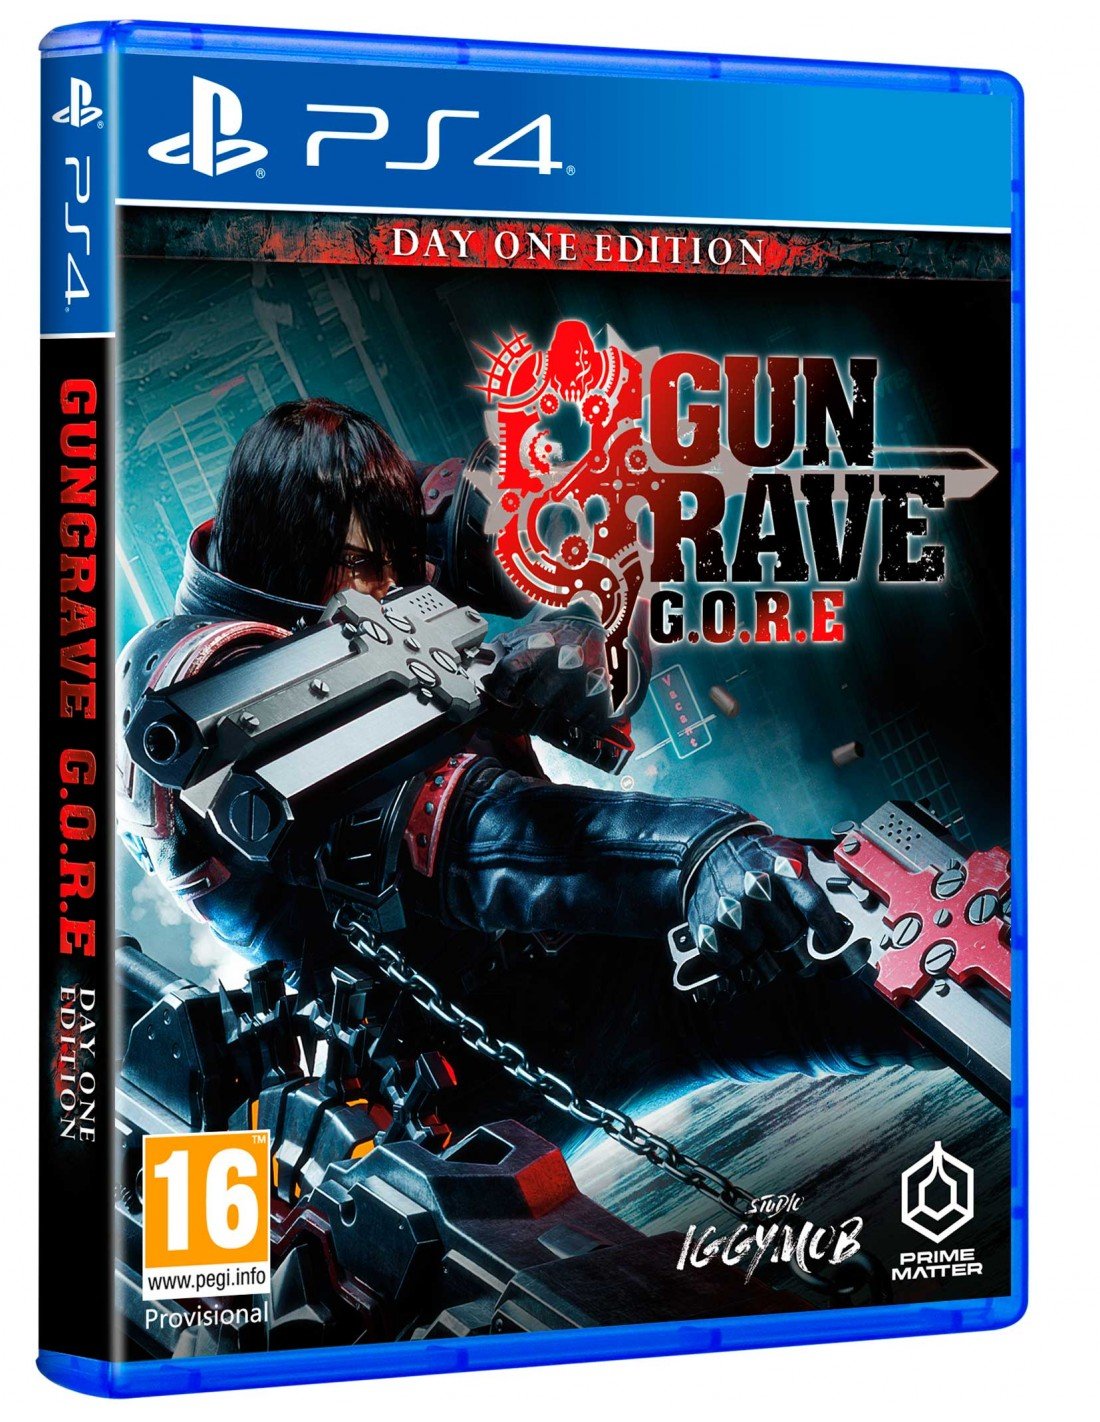 Gungrave G.O.R.E (Day One Edition) (ITA/SPA/Multi in Game) von Prime Matter